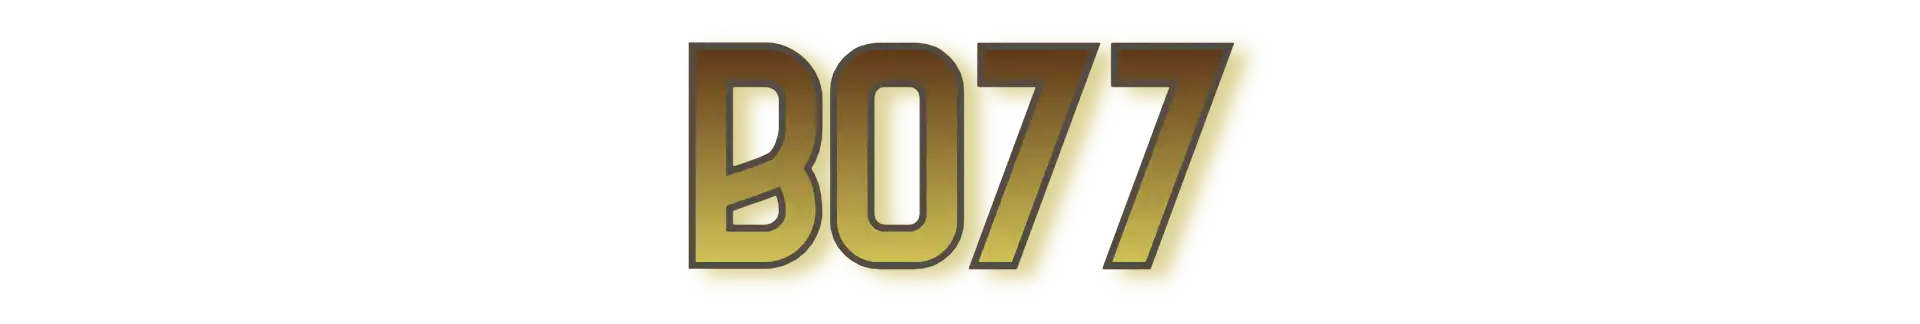 Bo77